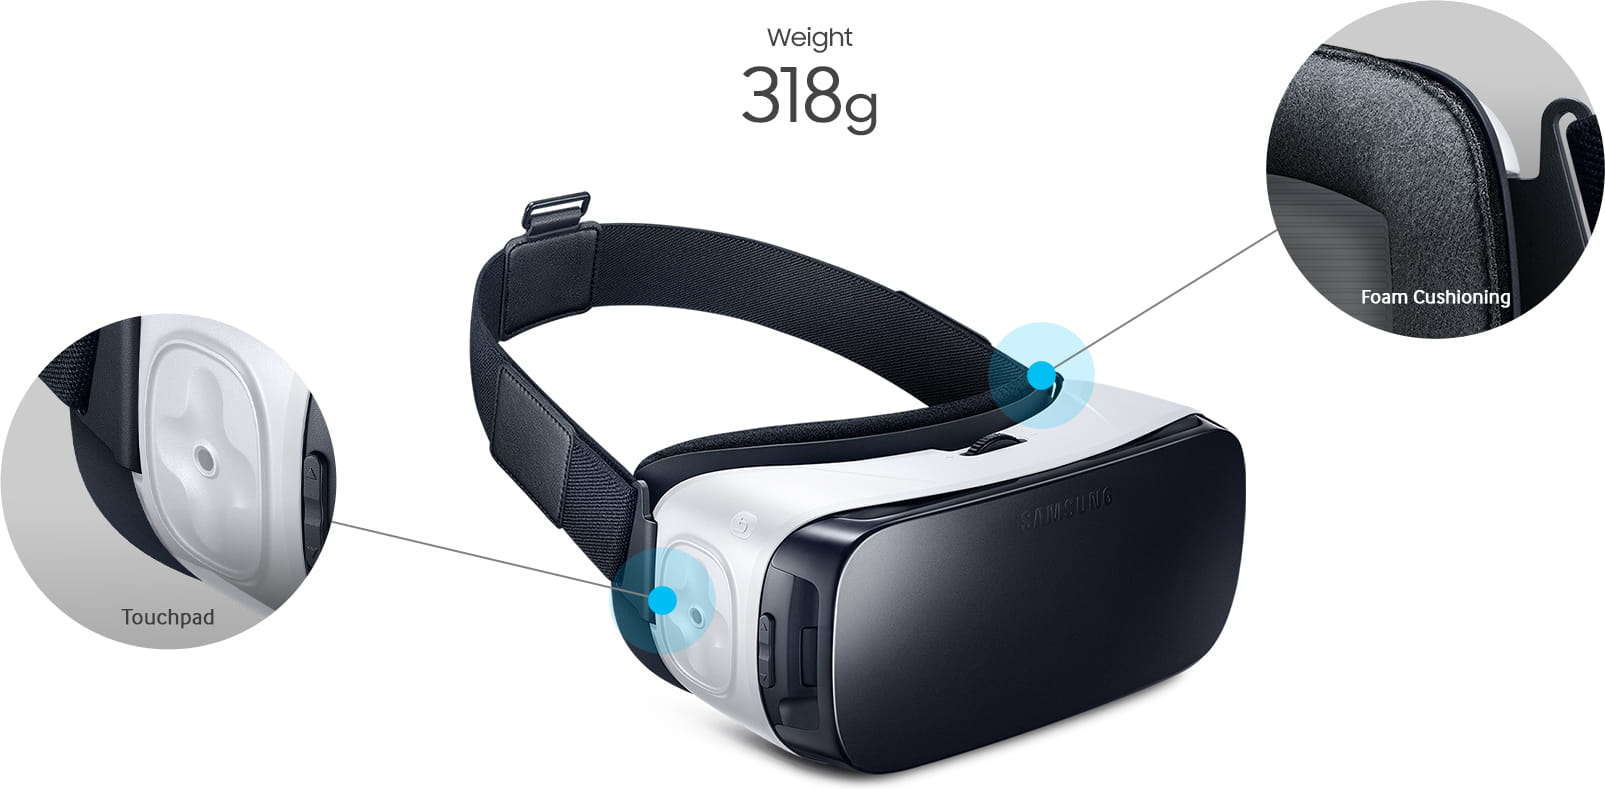 Samsung SM-R322 Gear VR lite